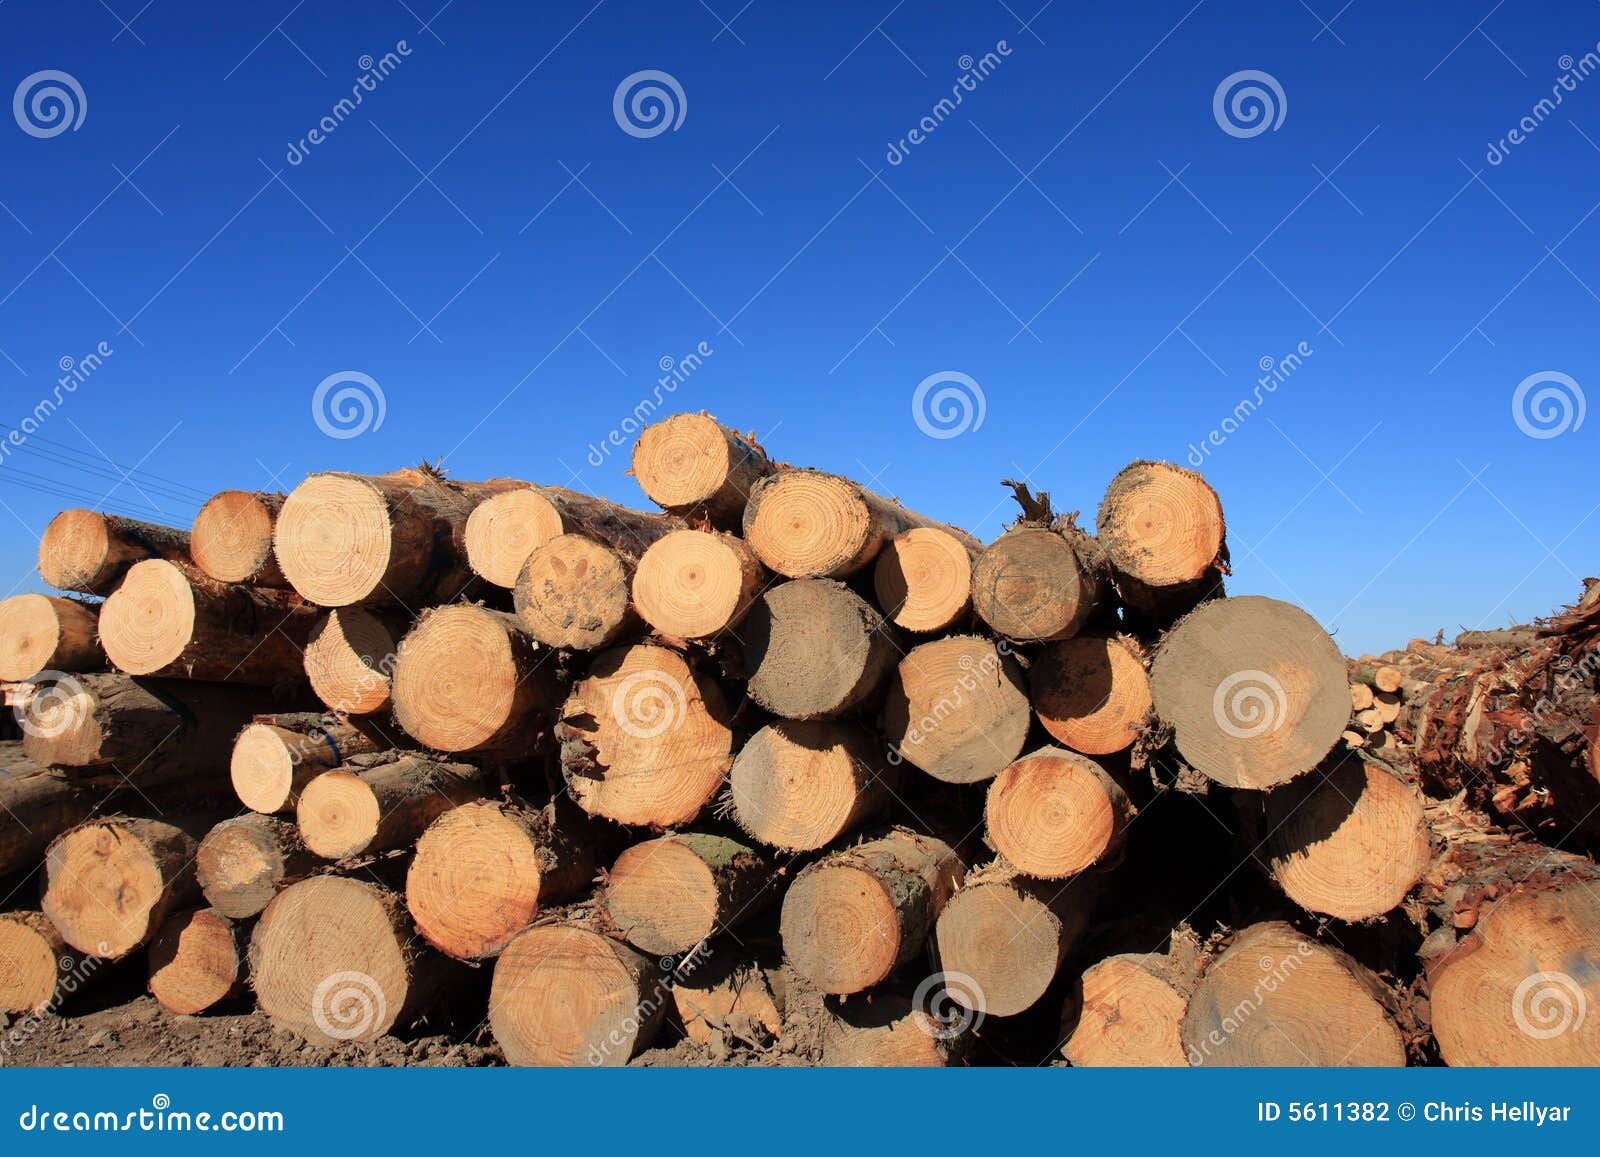 felled trees